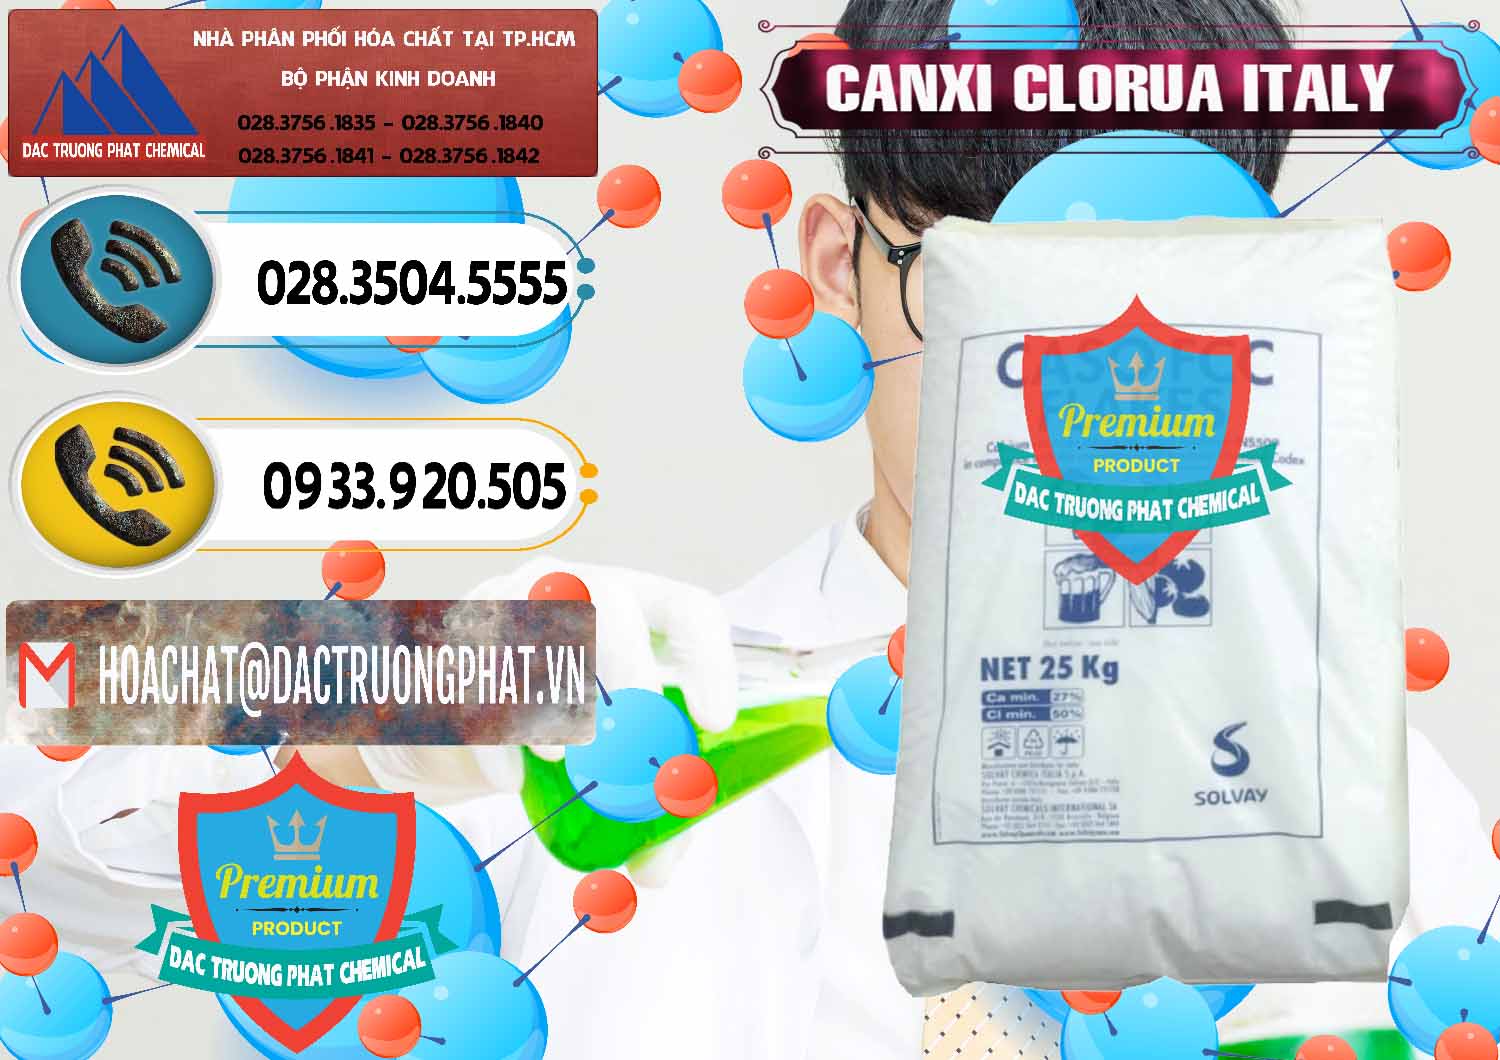 Nơi cung cấp ( bán ) CaCl2 – Canxi Clorua Food Grade Ý Italy - 0435 - Cty bán - cung cấp hóa chất tại TP.HCM - hoachatdetnhuom.vn